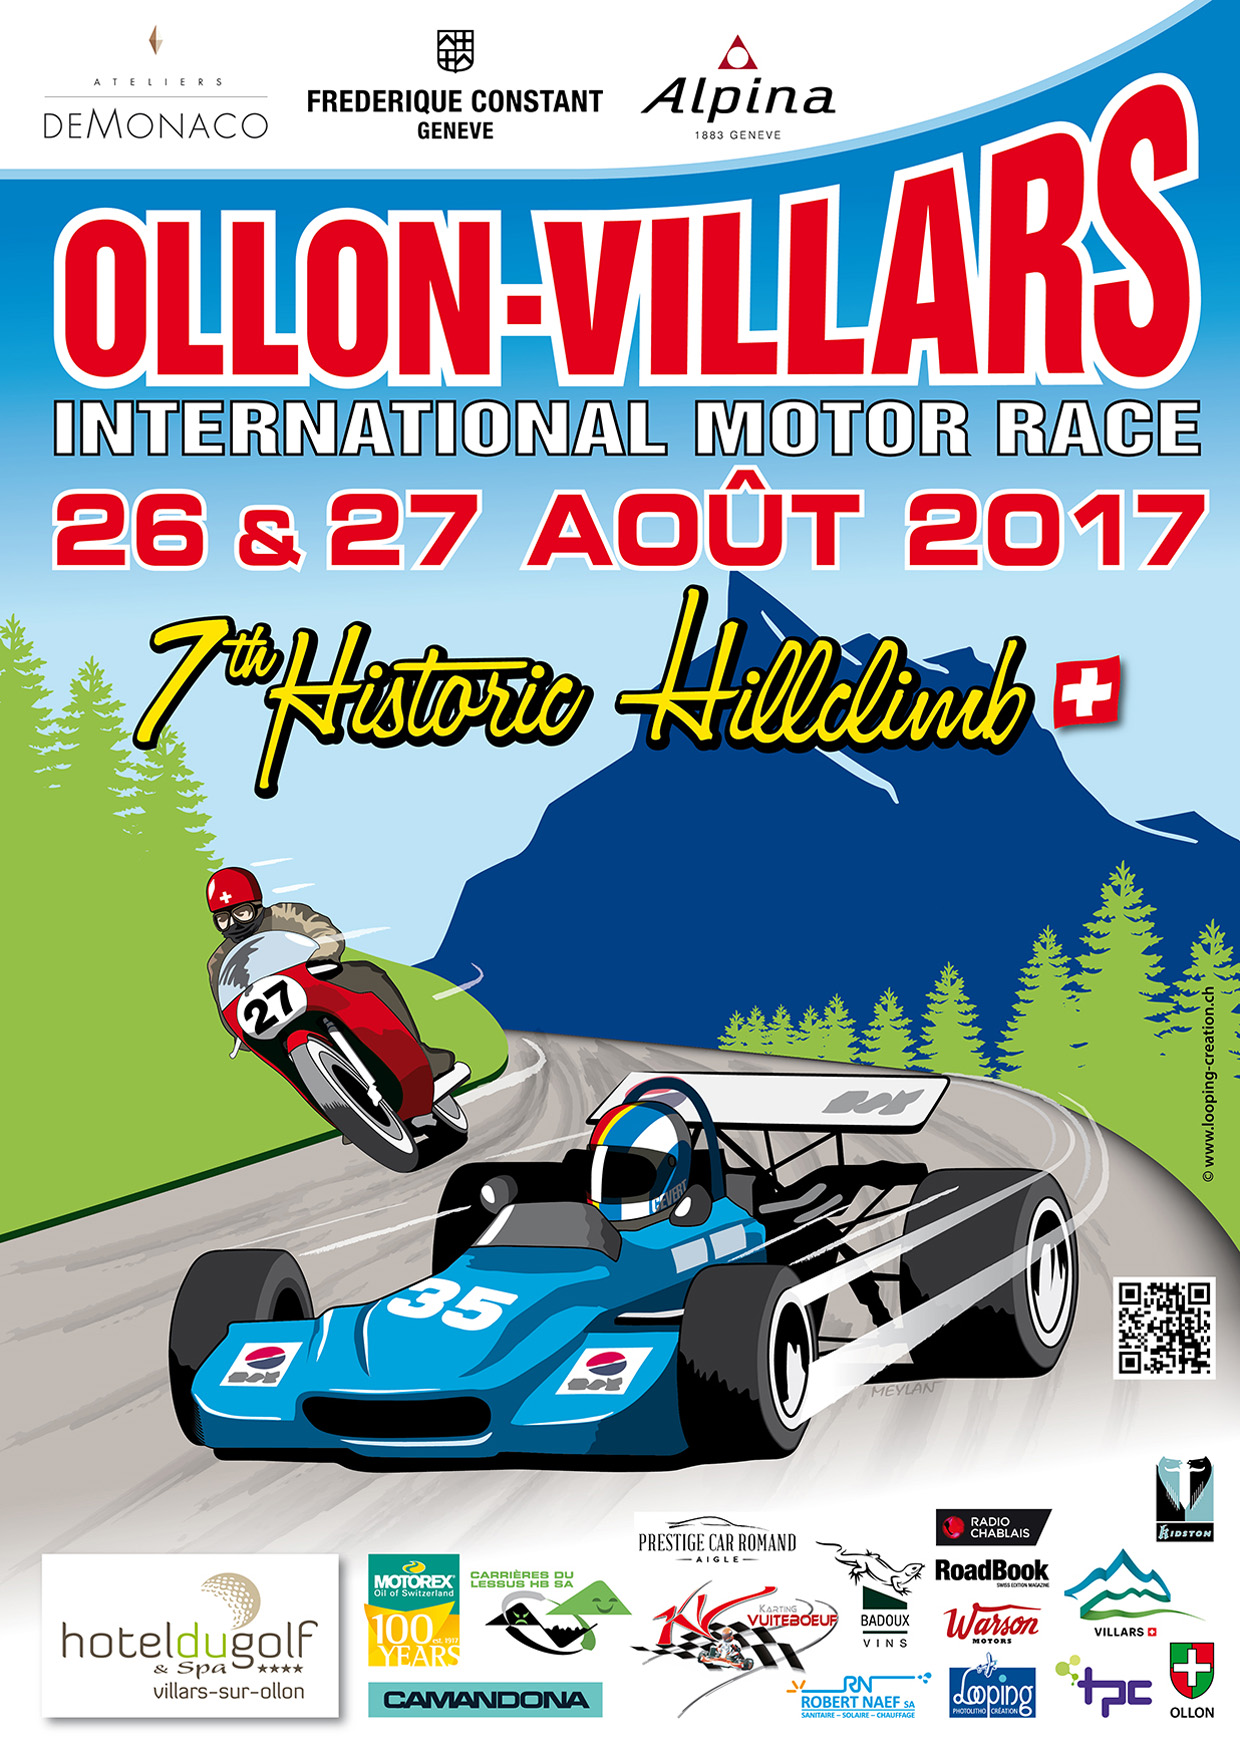 Ollon-Villars 2017